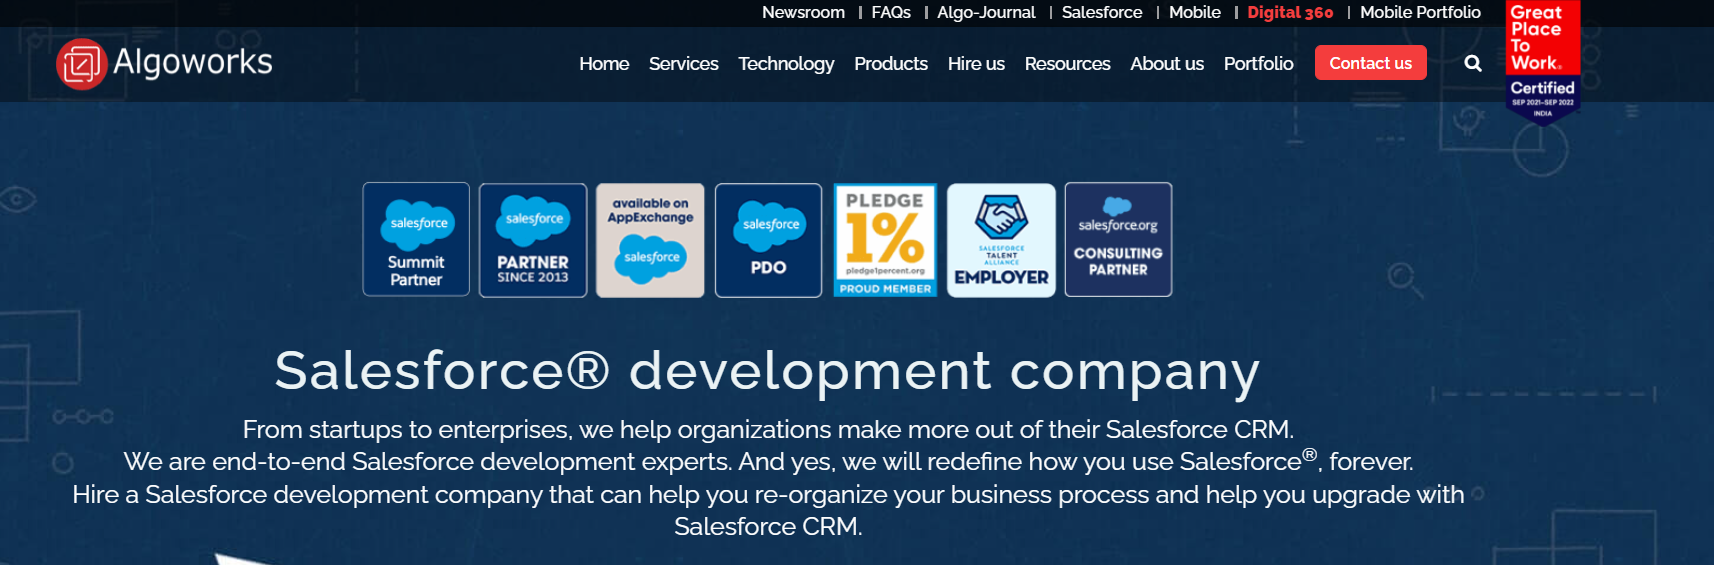 Salesforce Development Services Company in California, USA